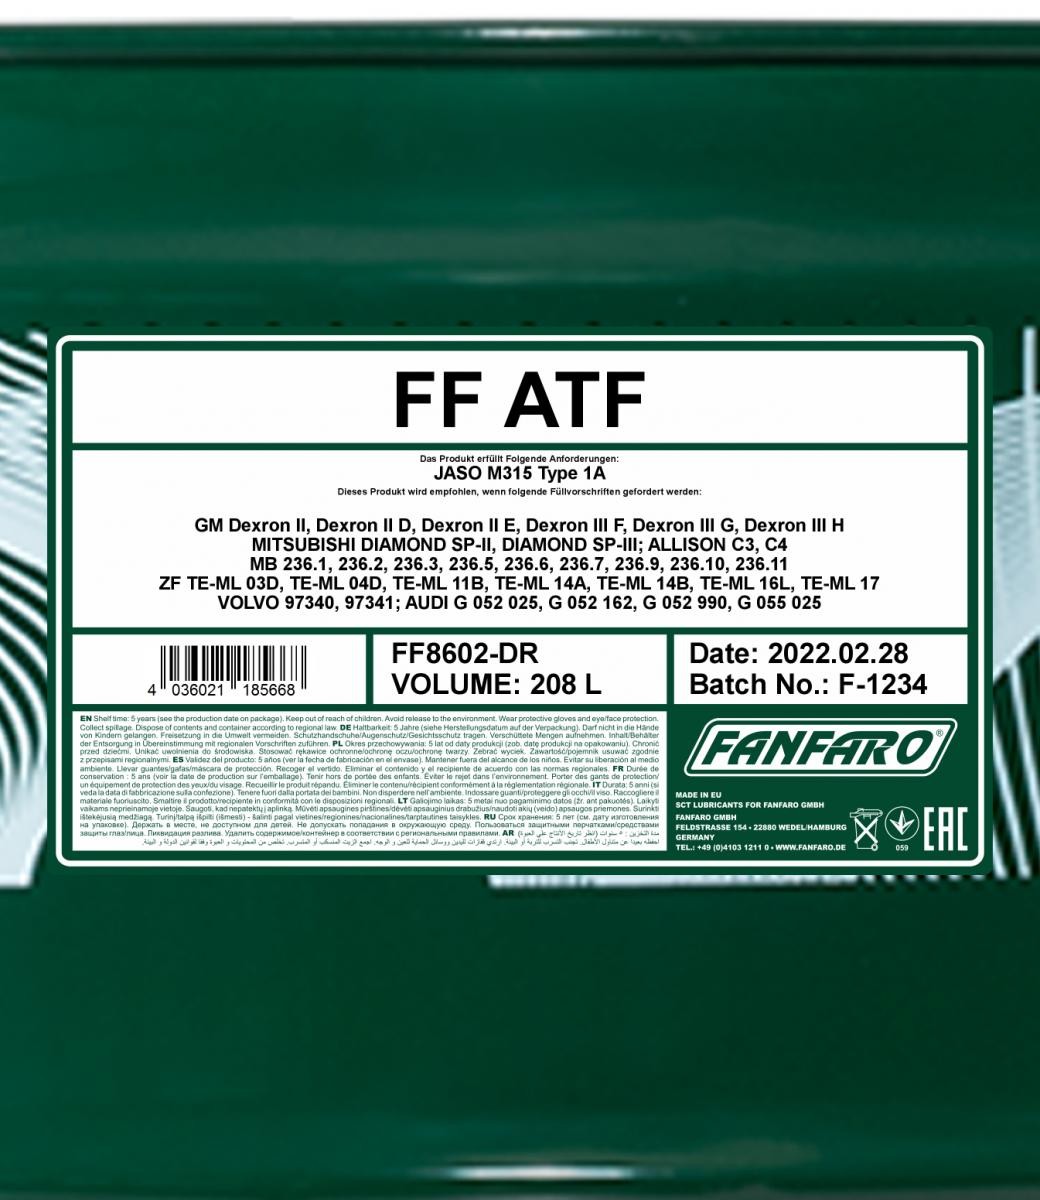 FANFARO Automatic transmission fluid FF8602-DR